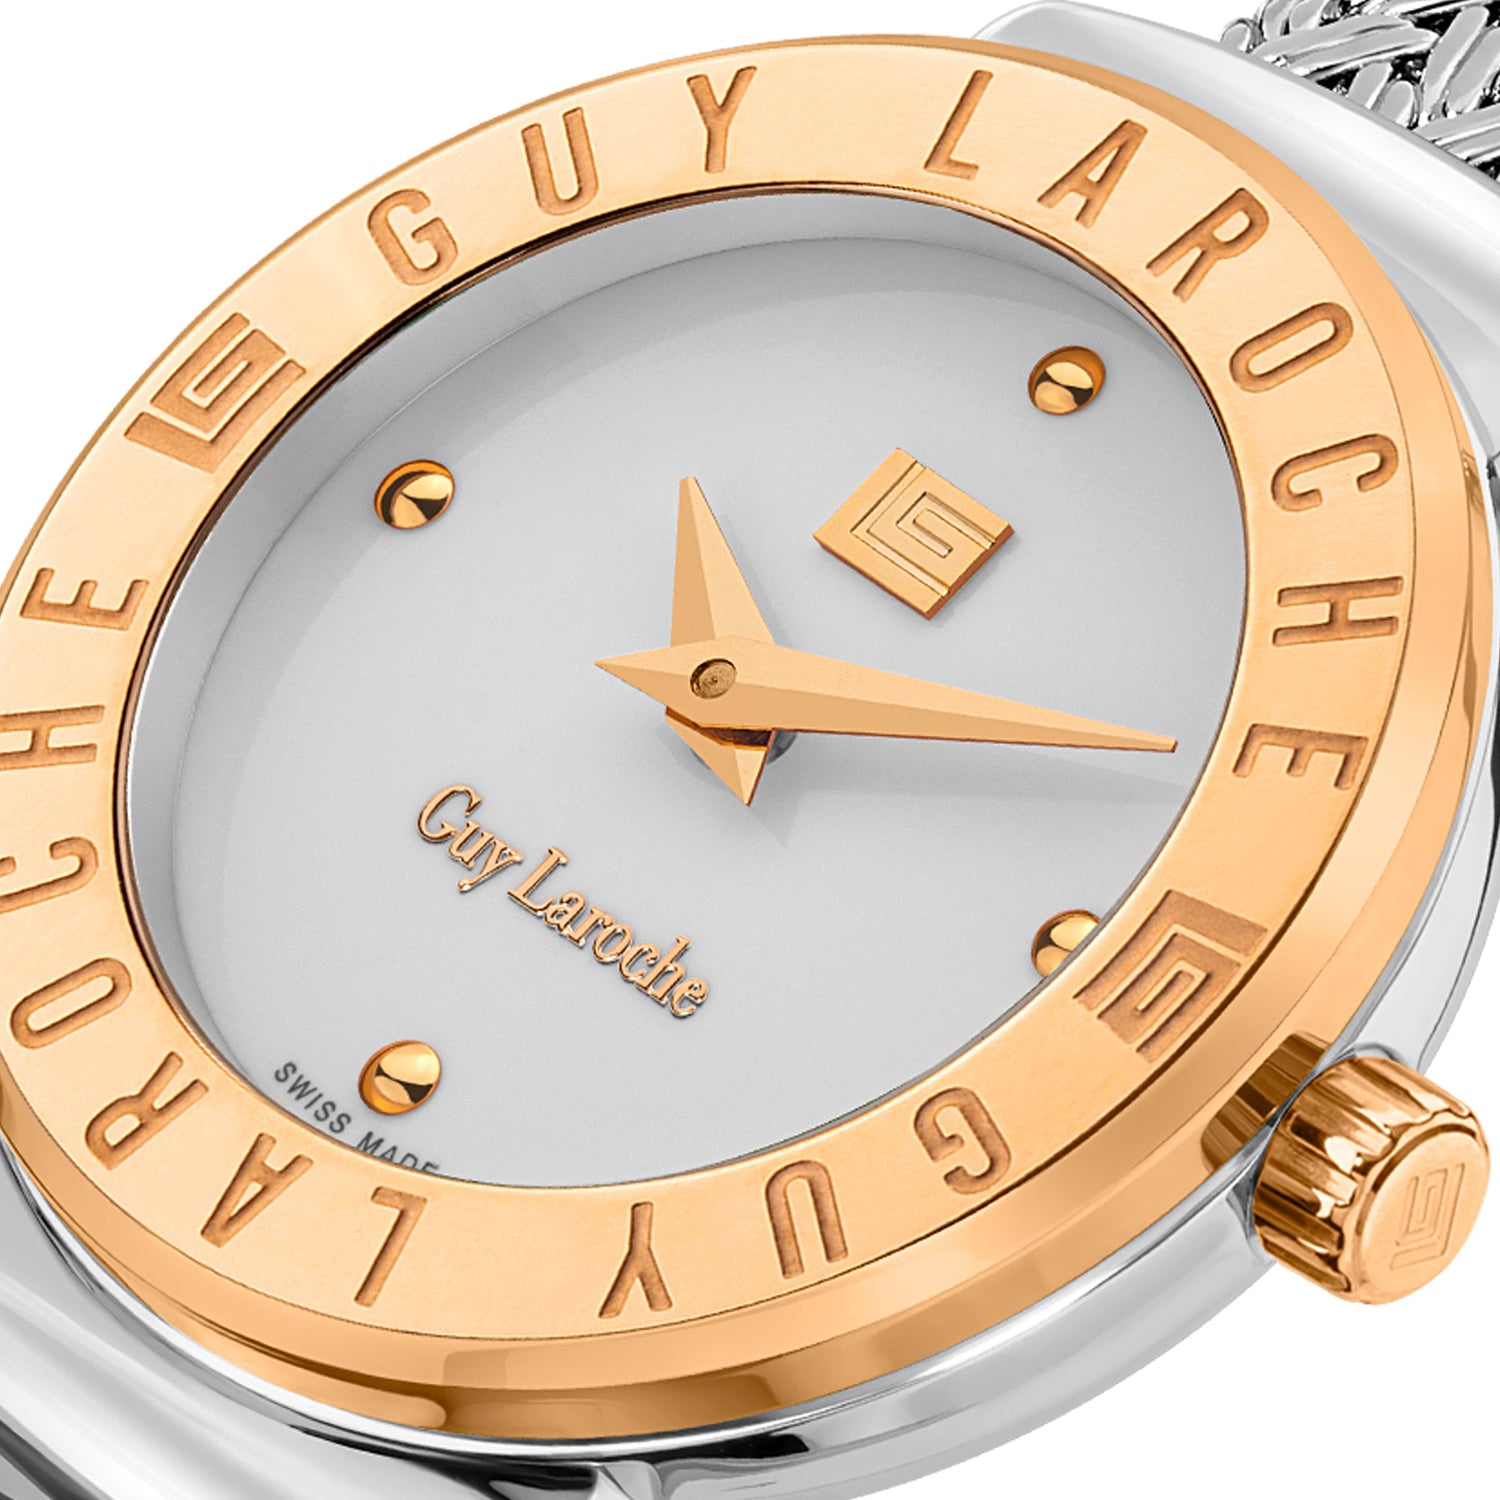 Guy Laroche Bracelet Watch